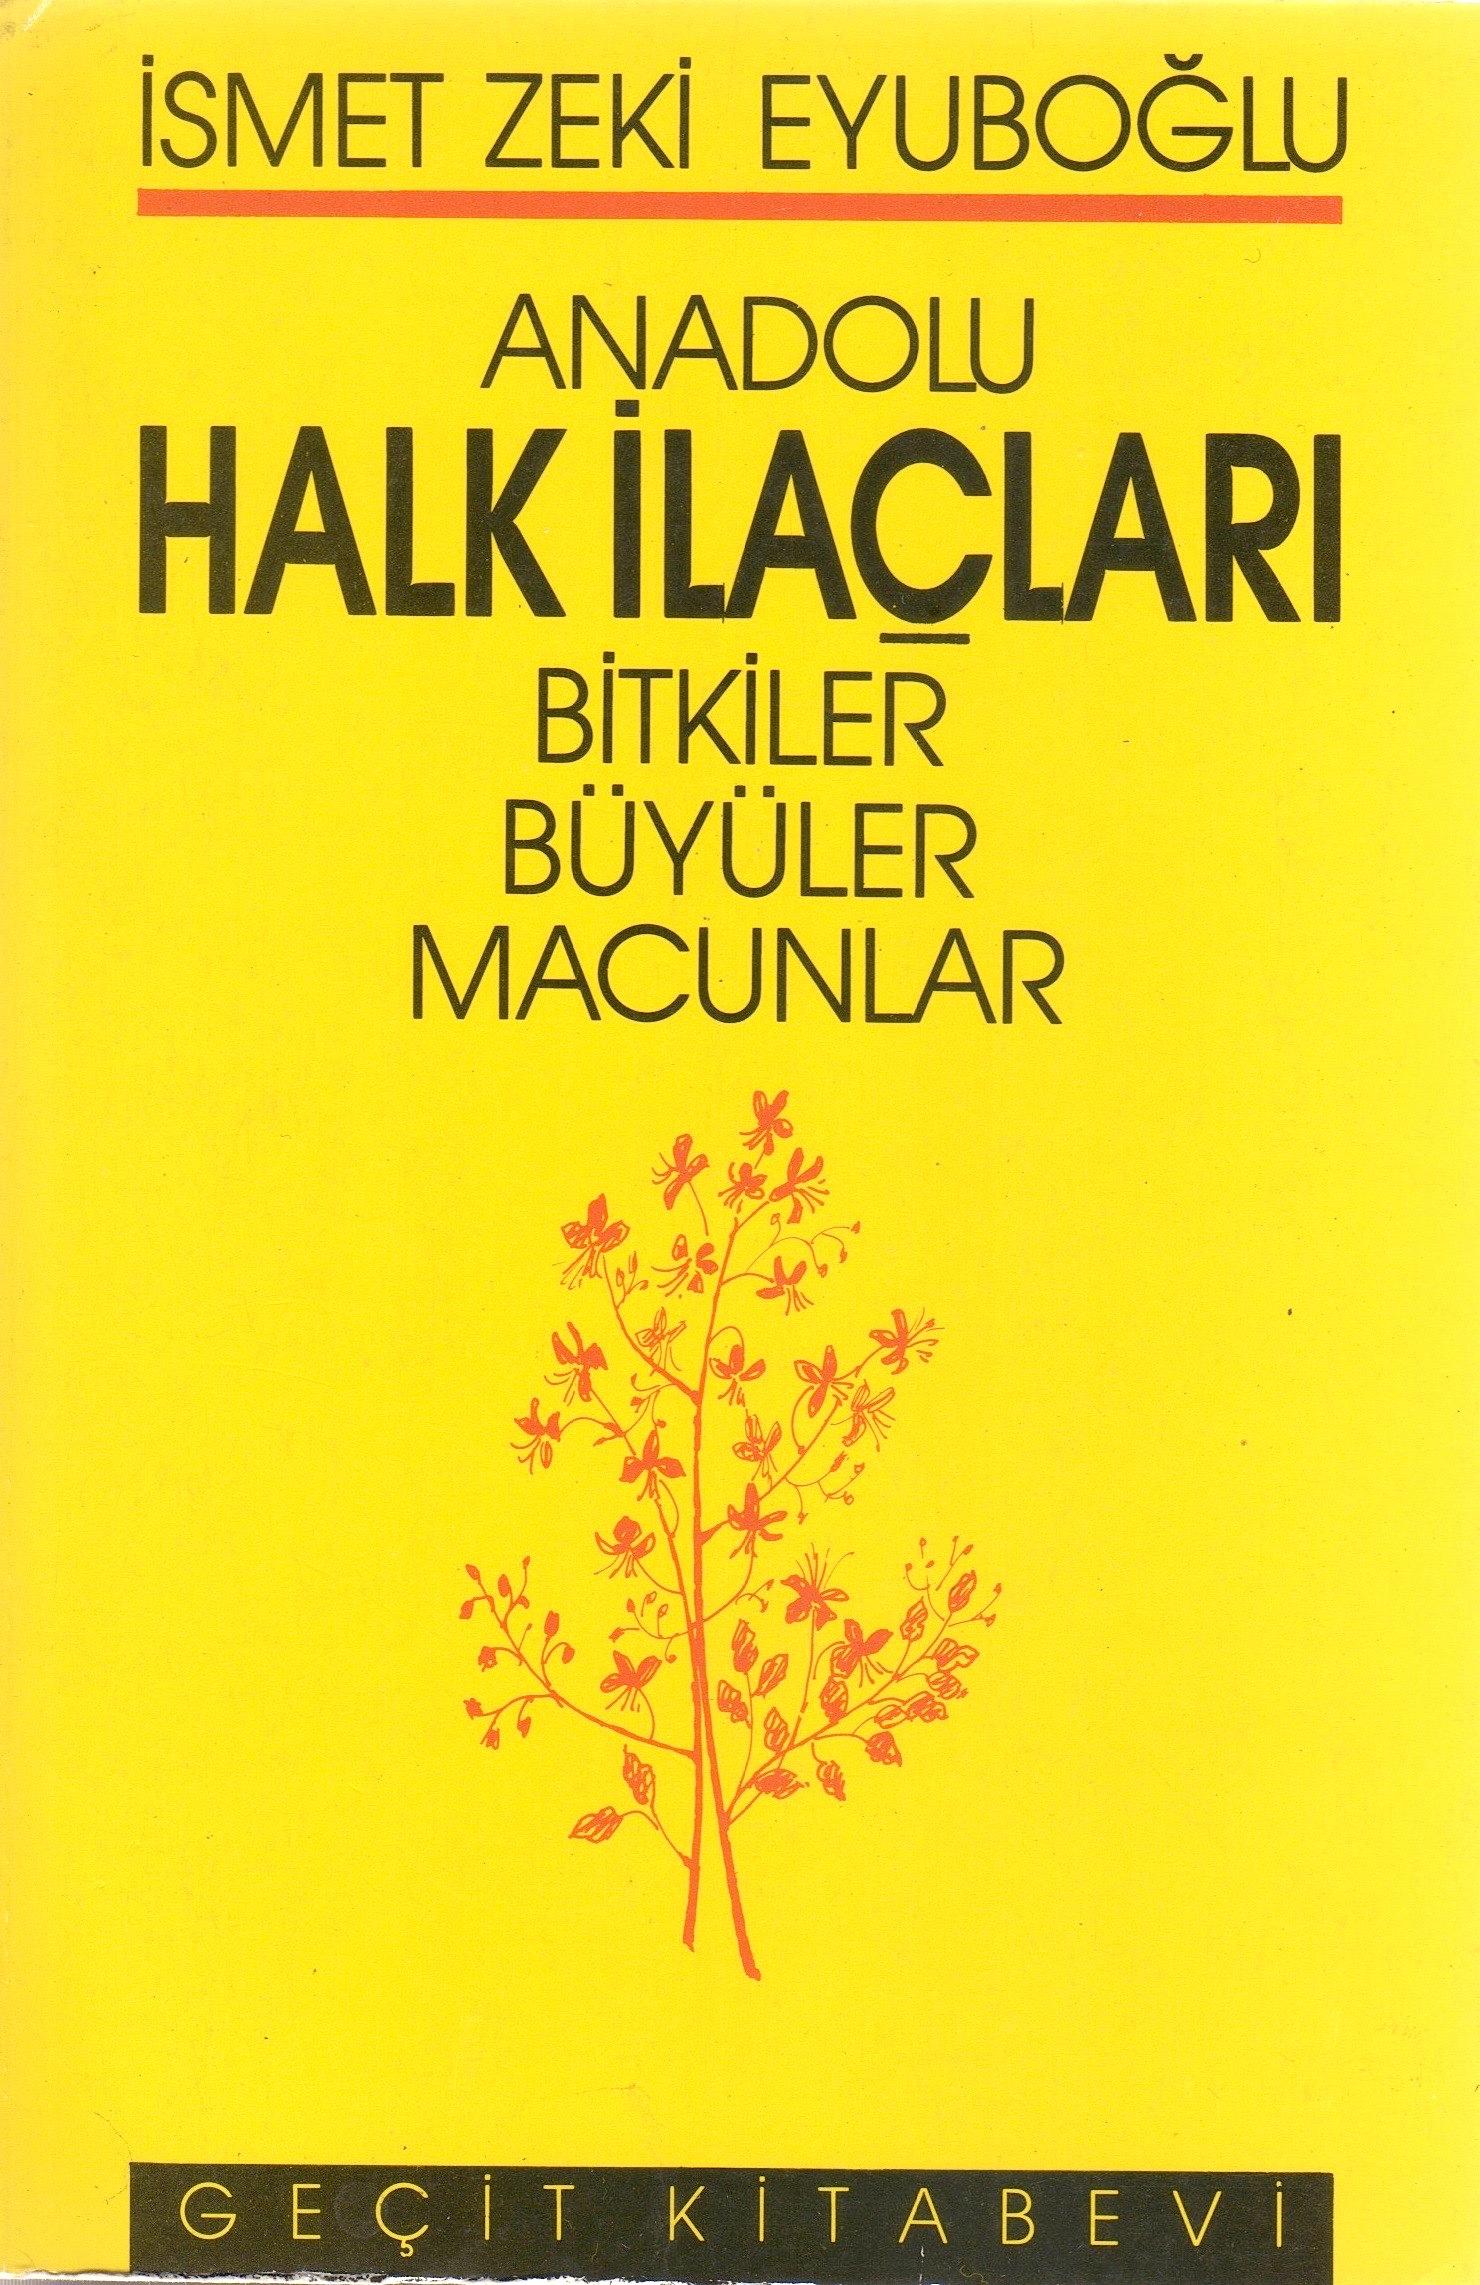 3. Anadolu Halk İlaçlari İ.Z. Eyüboğlu 1987 İst. 685 s.